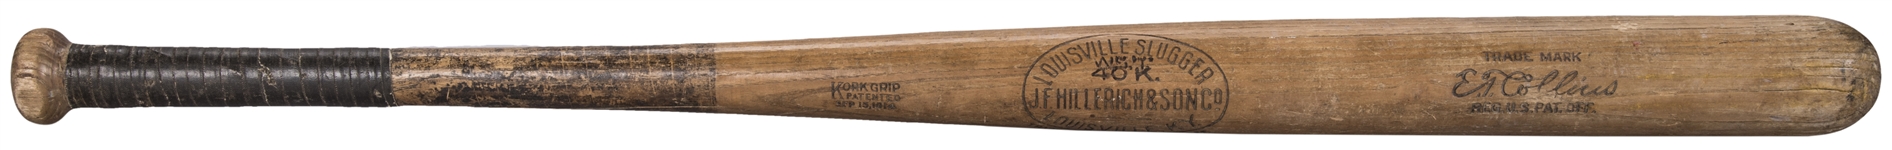 1914-1915 Eddie Collins Game Used Hillerich & Bradsby C139 Model Bat-MVP Era- (PSA/DNA GU 7.5)